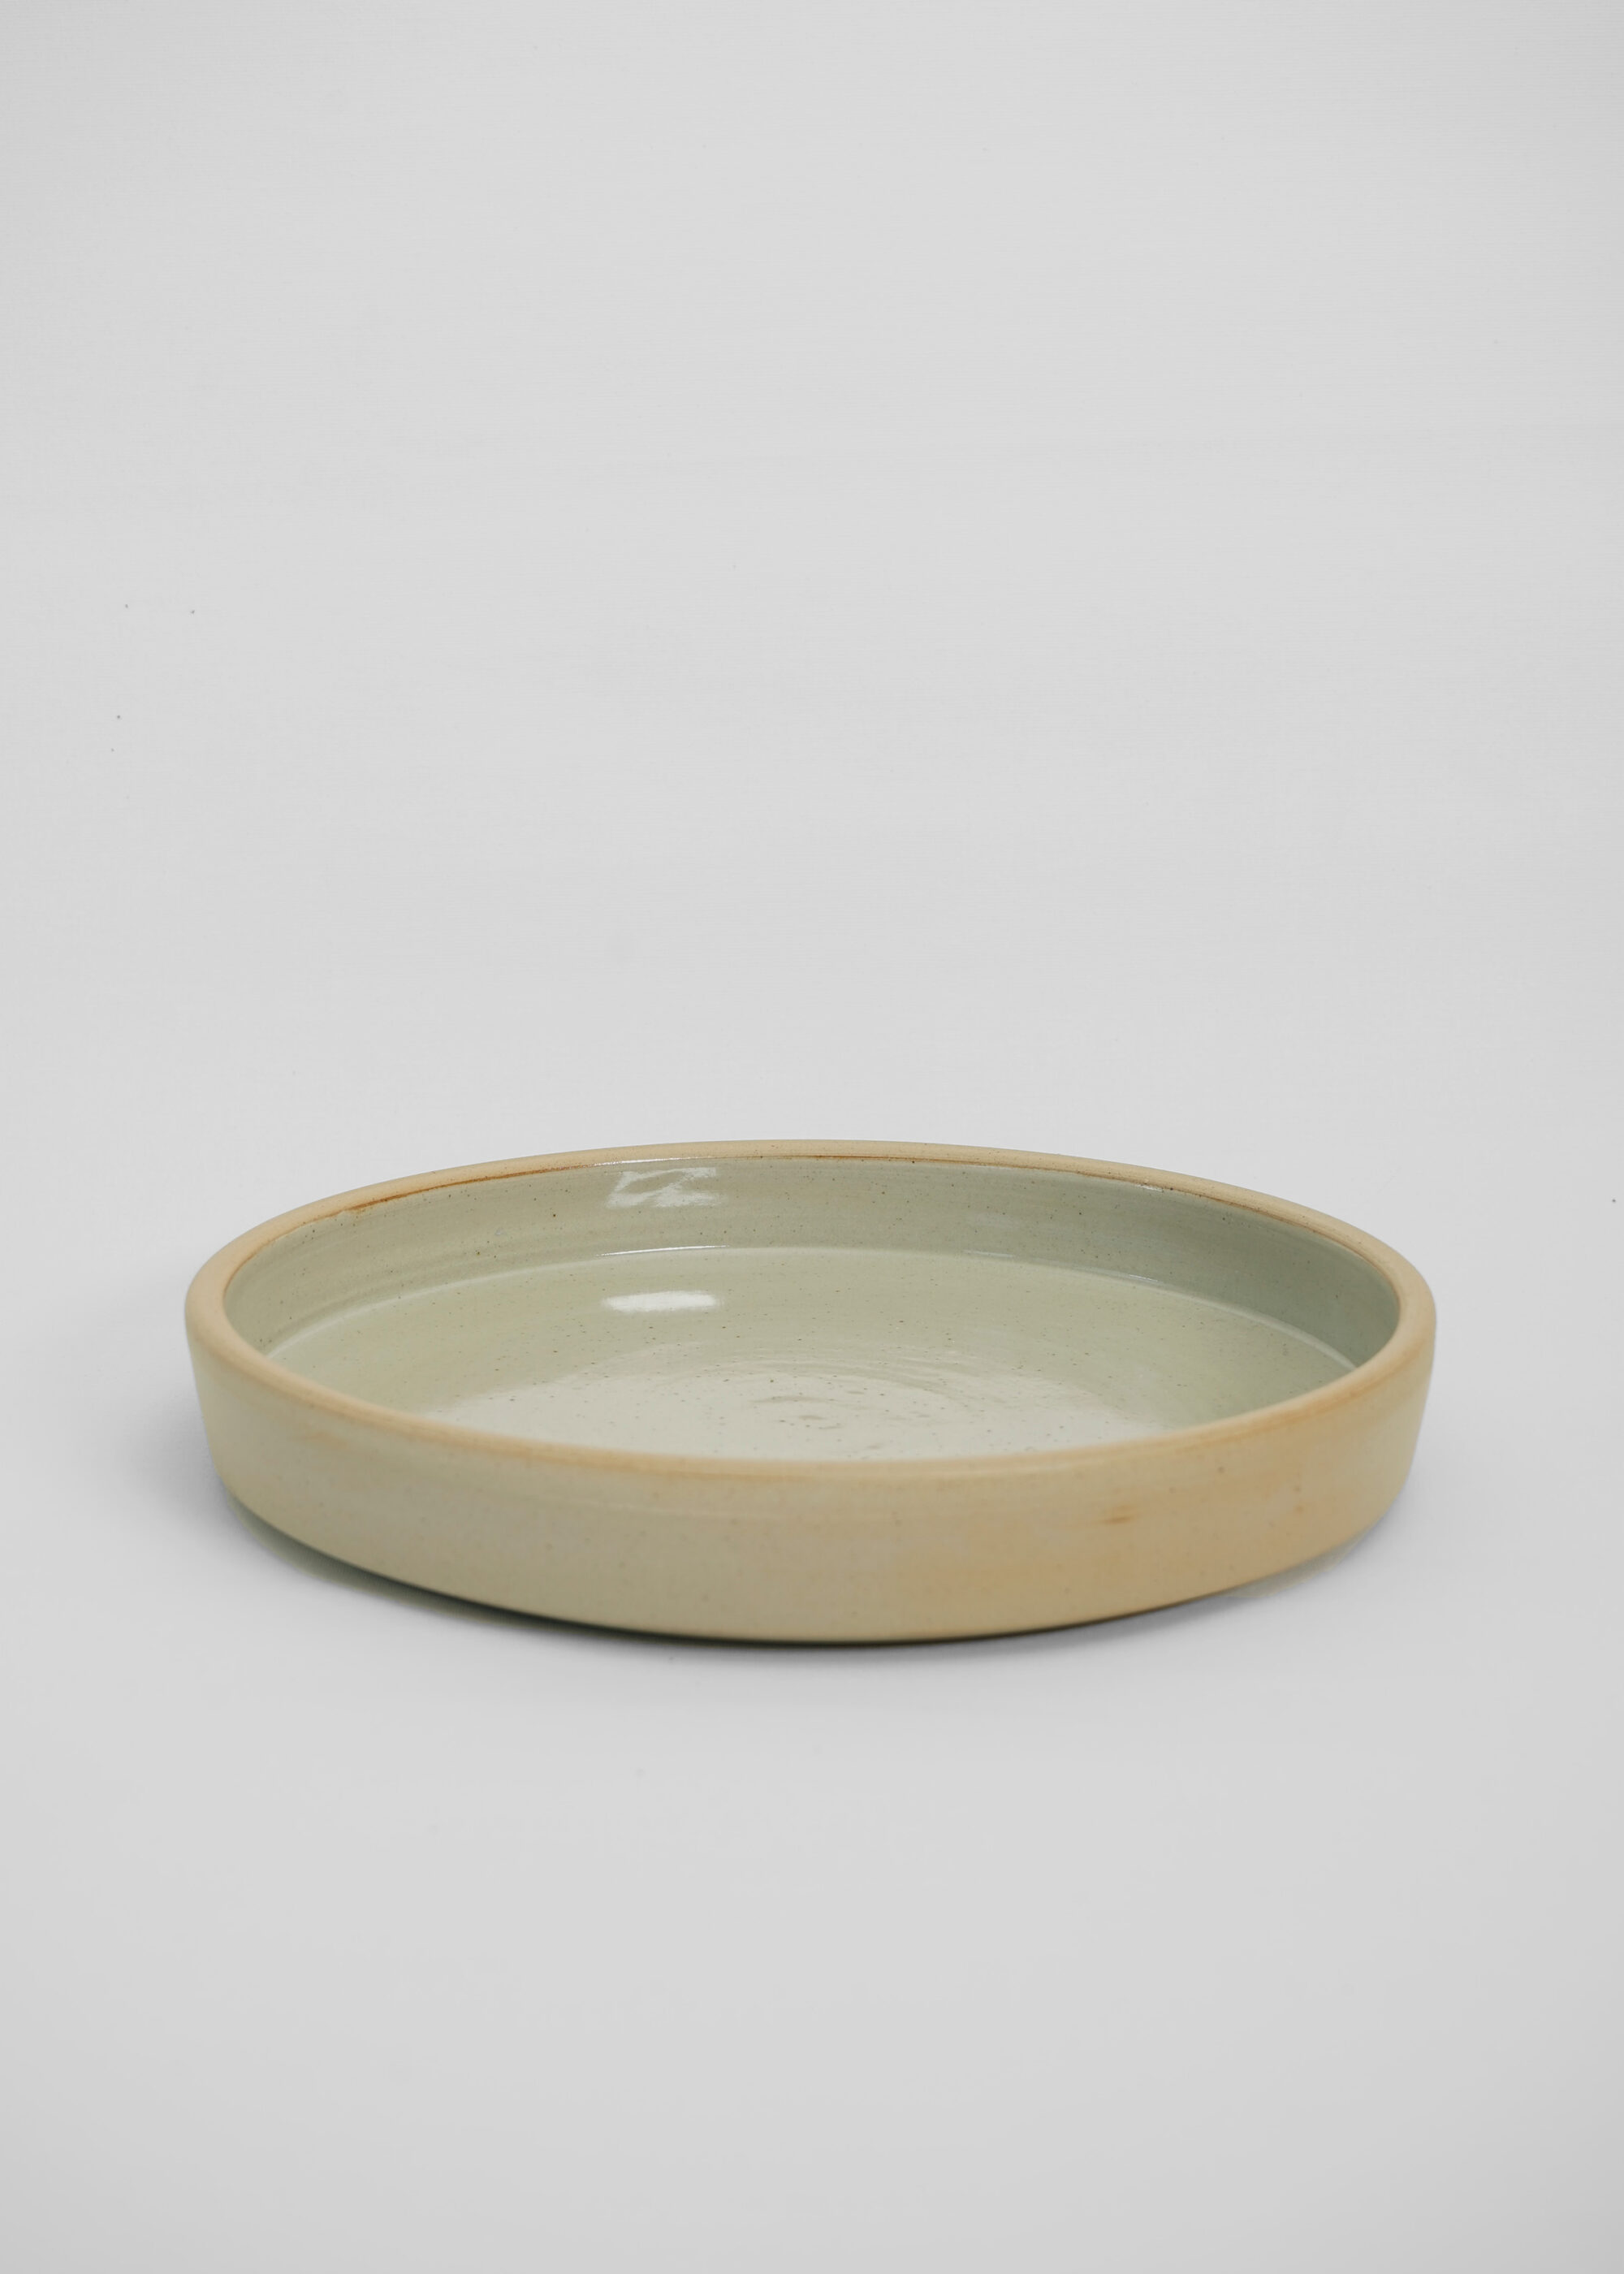 Product image for »Moribana Semi-Glazed« Large Ikebana Plate Bowl | Genuine Stoneware Ceramic